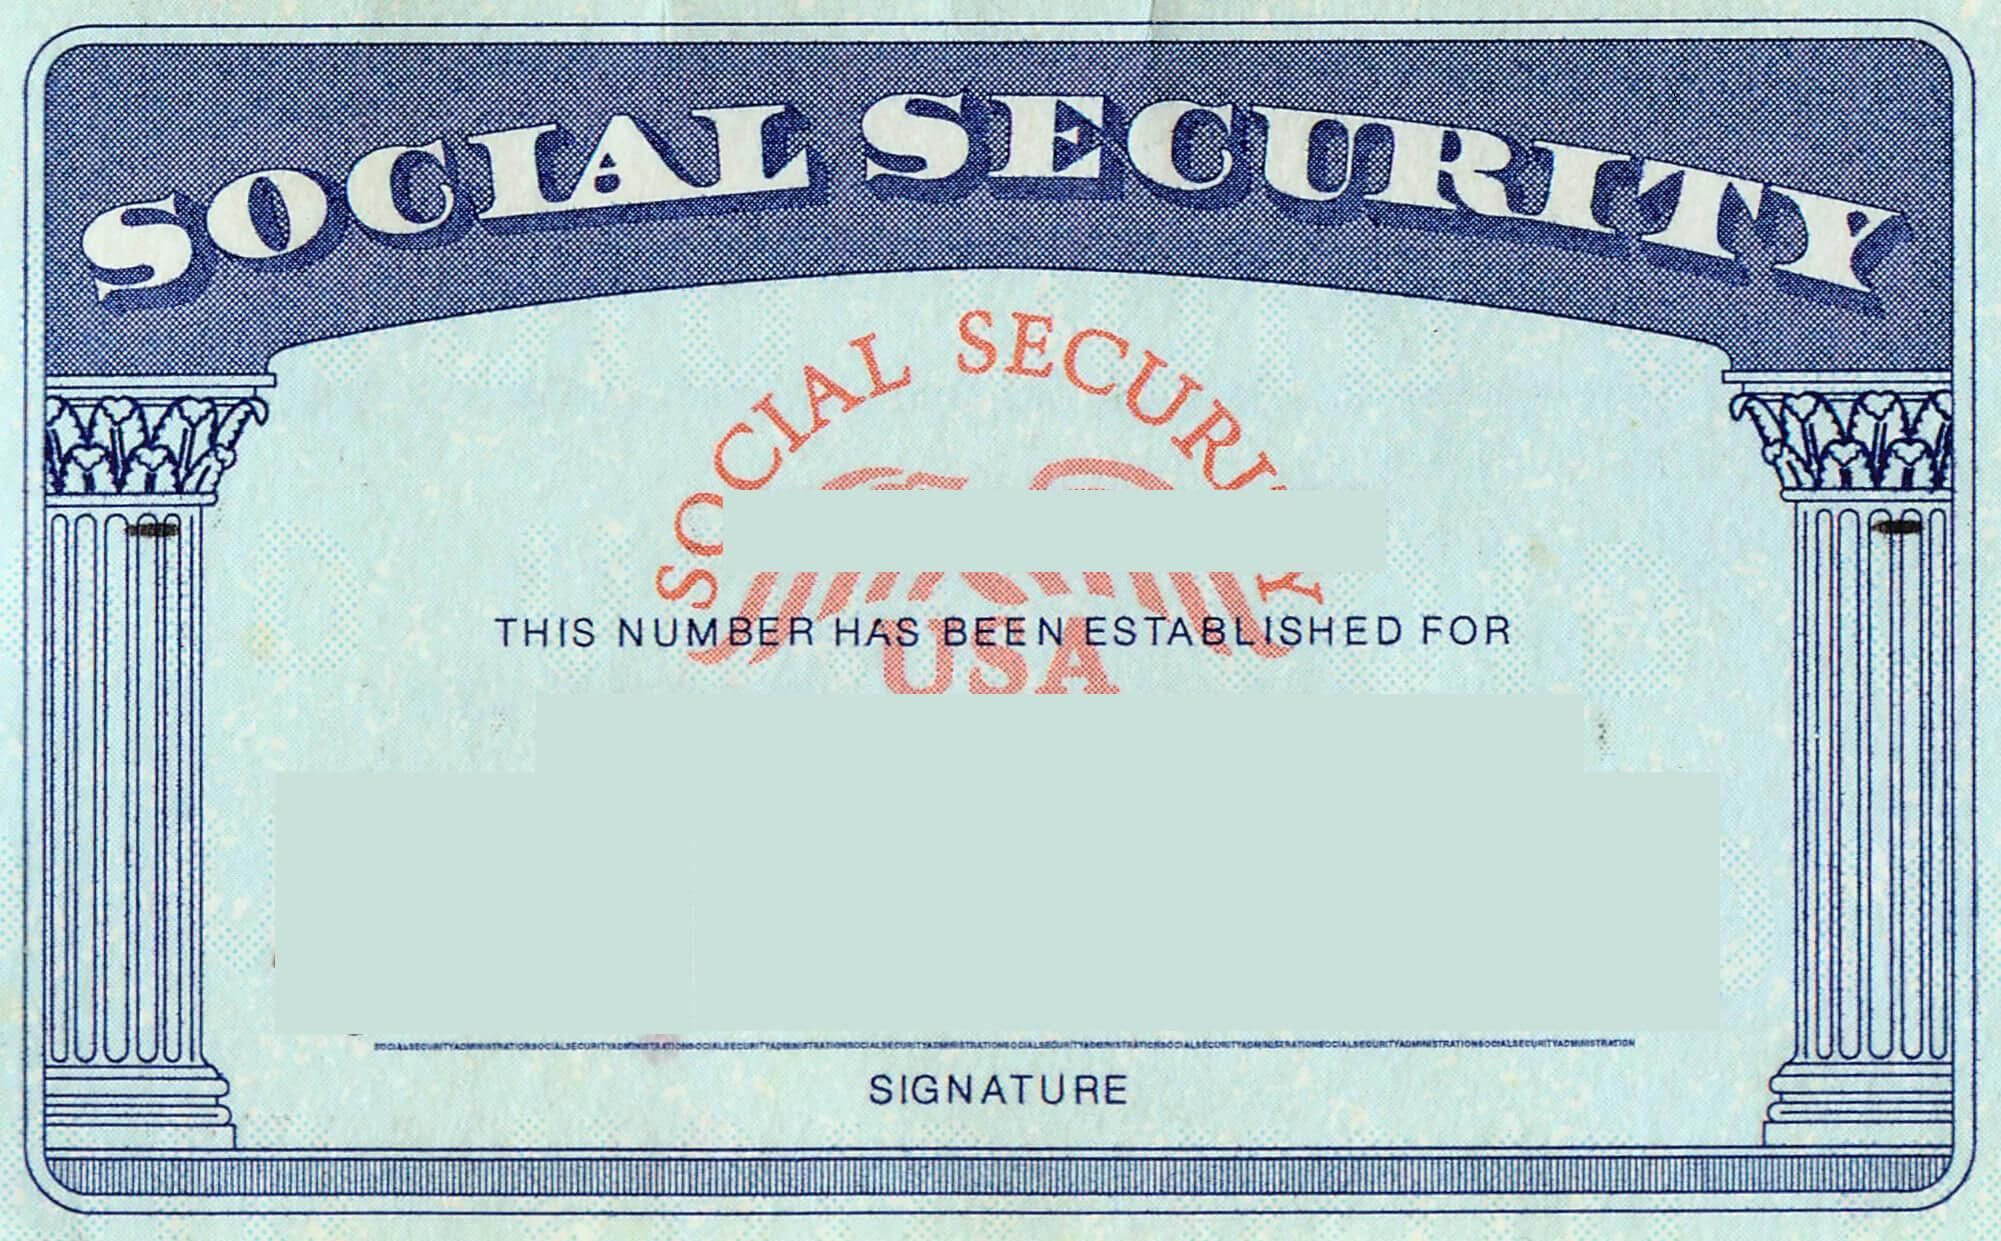 Blank Social Security Card Template | Social Security Card Inside Social Security Card Template Photoshop